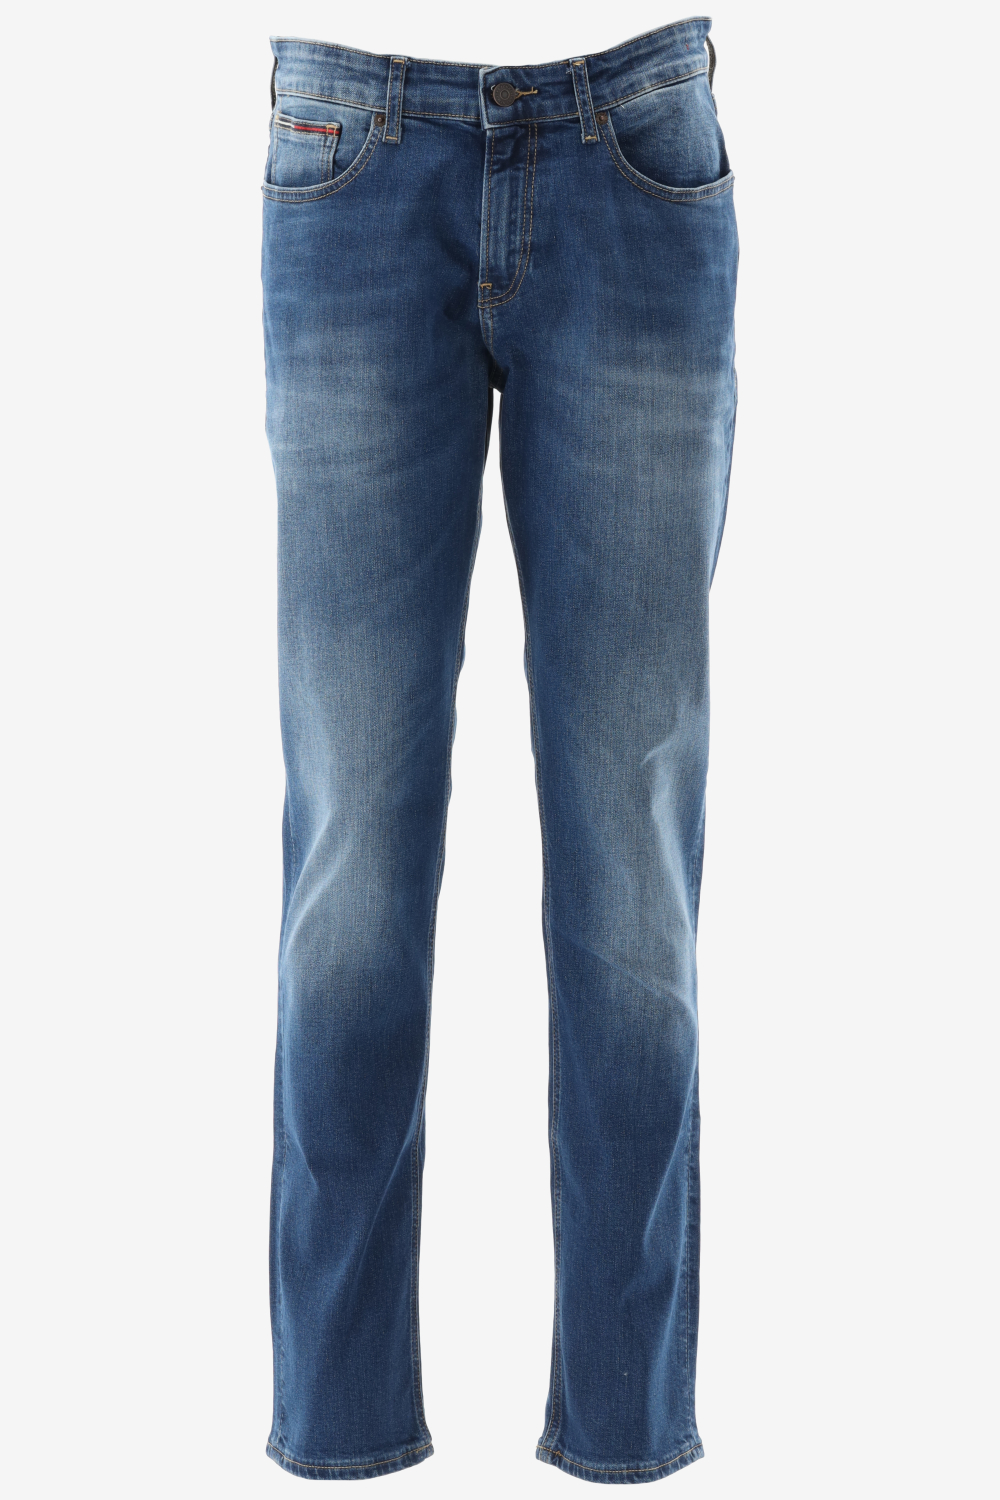 Voordracht schattig Bisschop Heren jeans koop je online bij Bergmans Outlet! Alle bekende merken altijd  tot 60% goedkoper! Shop nu online! - Herenkleding Jeans - Bergmans Fashion  Outlet - Webshop | GRATIS VERZENDING!